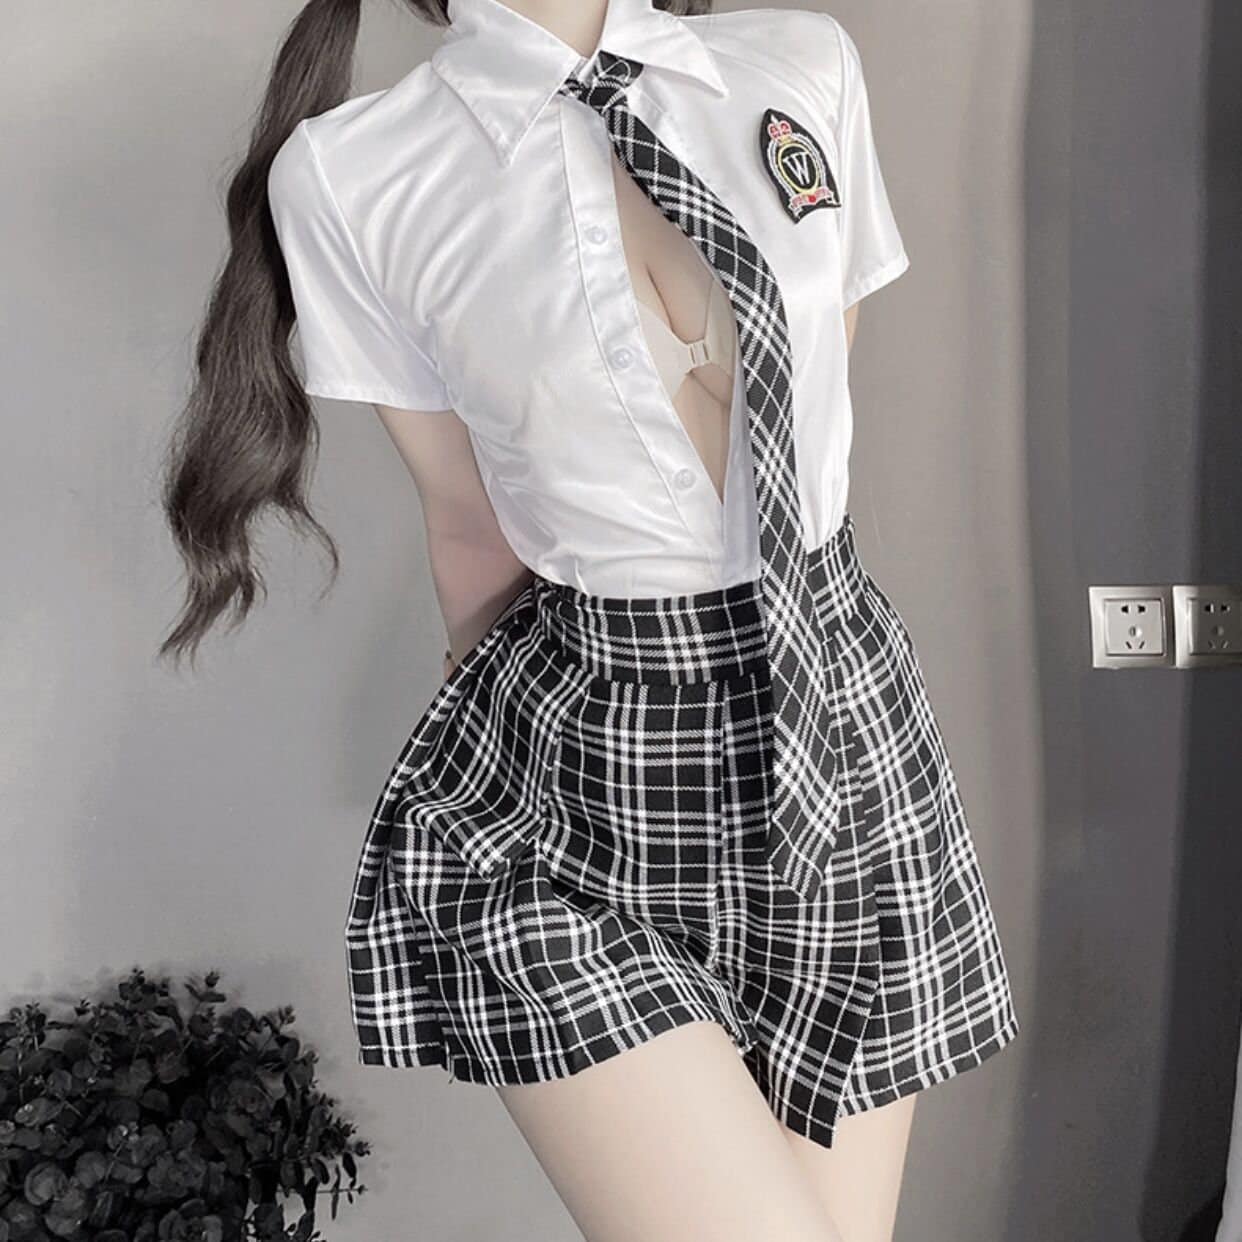 Singapore School Girl Sex - School Girl Lingerie - Etsy